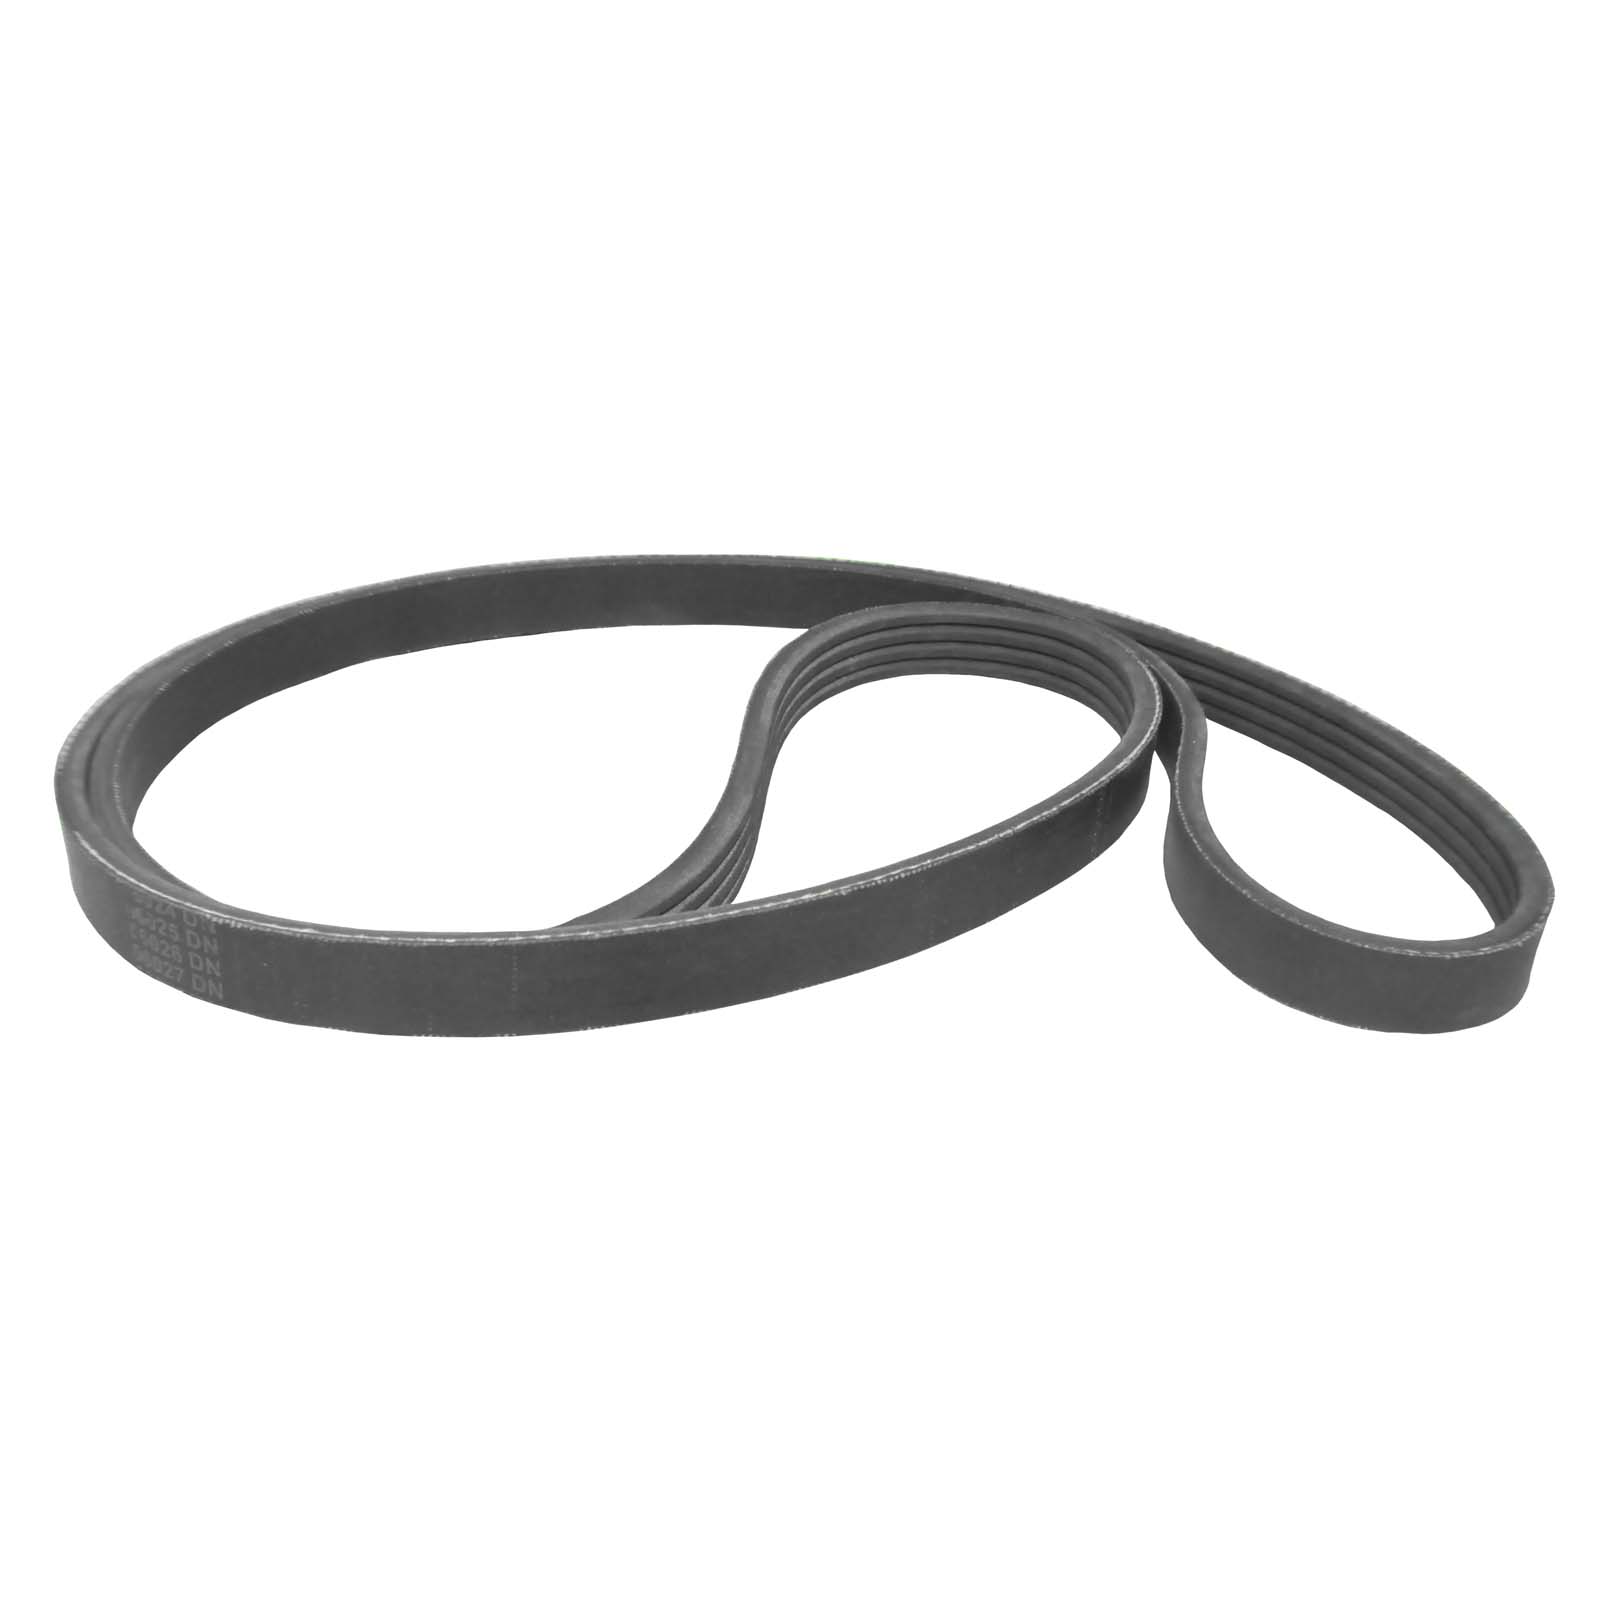 Rikon Drive Belt for 10-341, 10-346, 10-347 Bandsaws